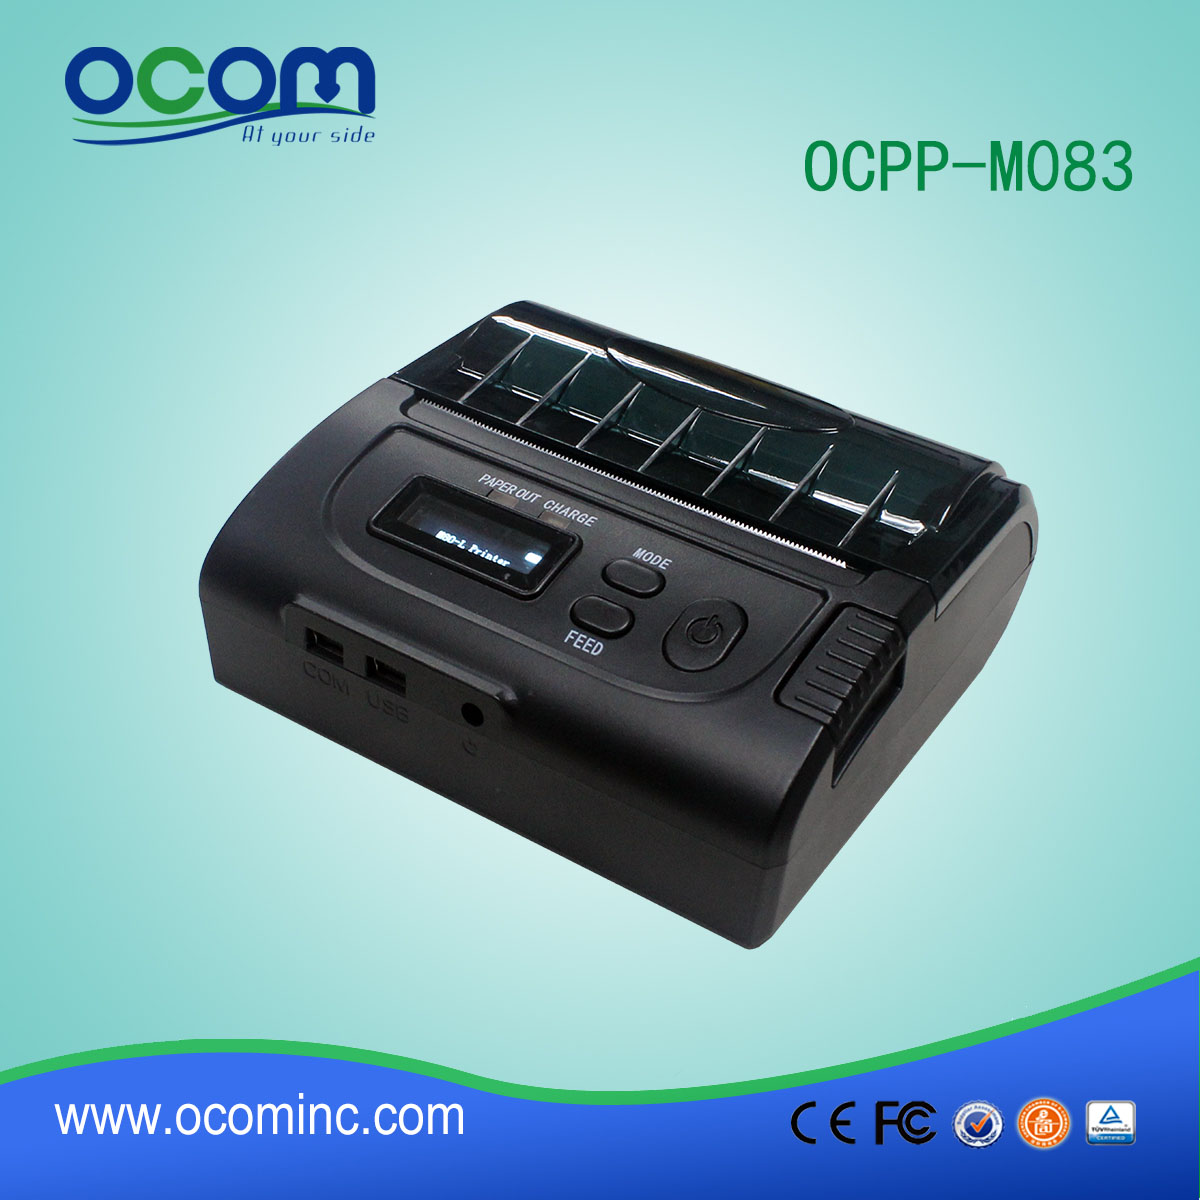 OCPP-M083 завод pos принтер мобильный термопринтер